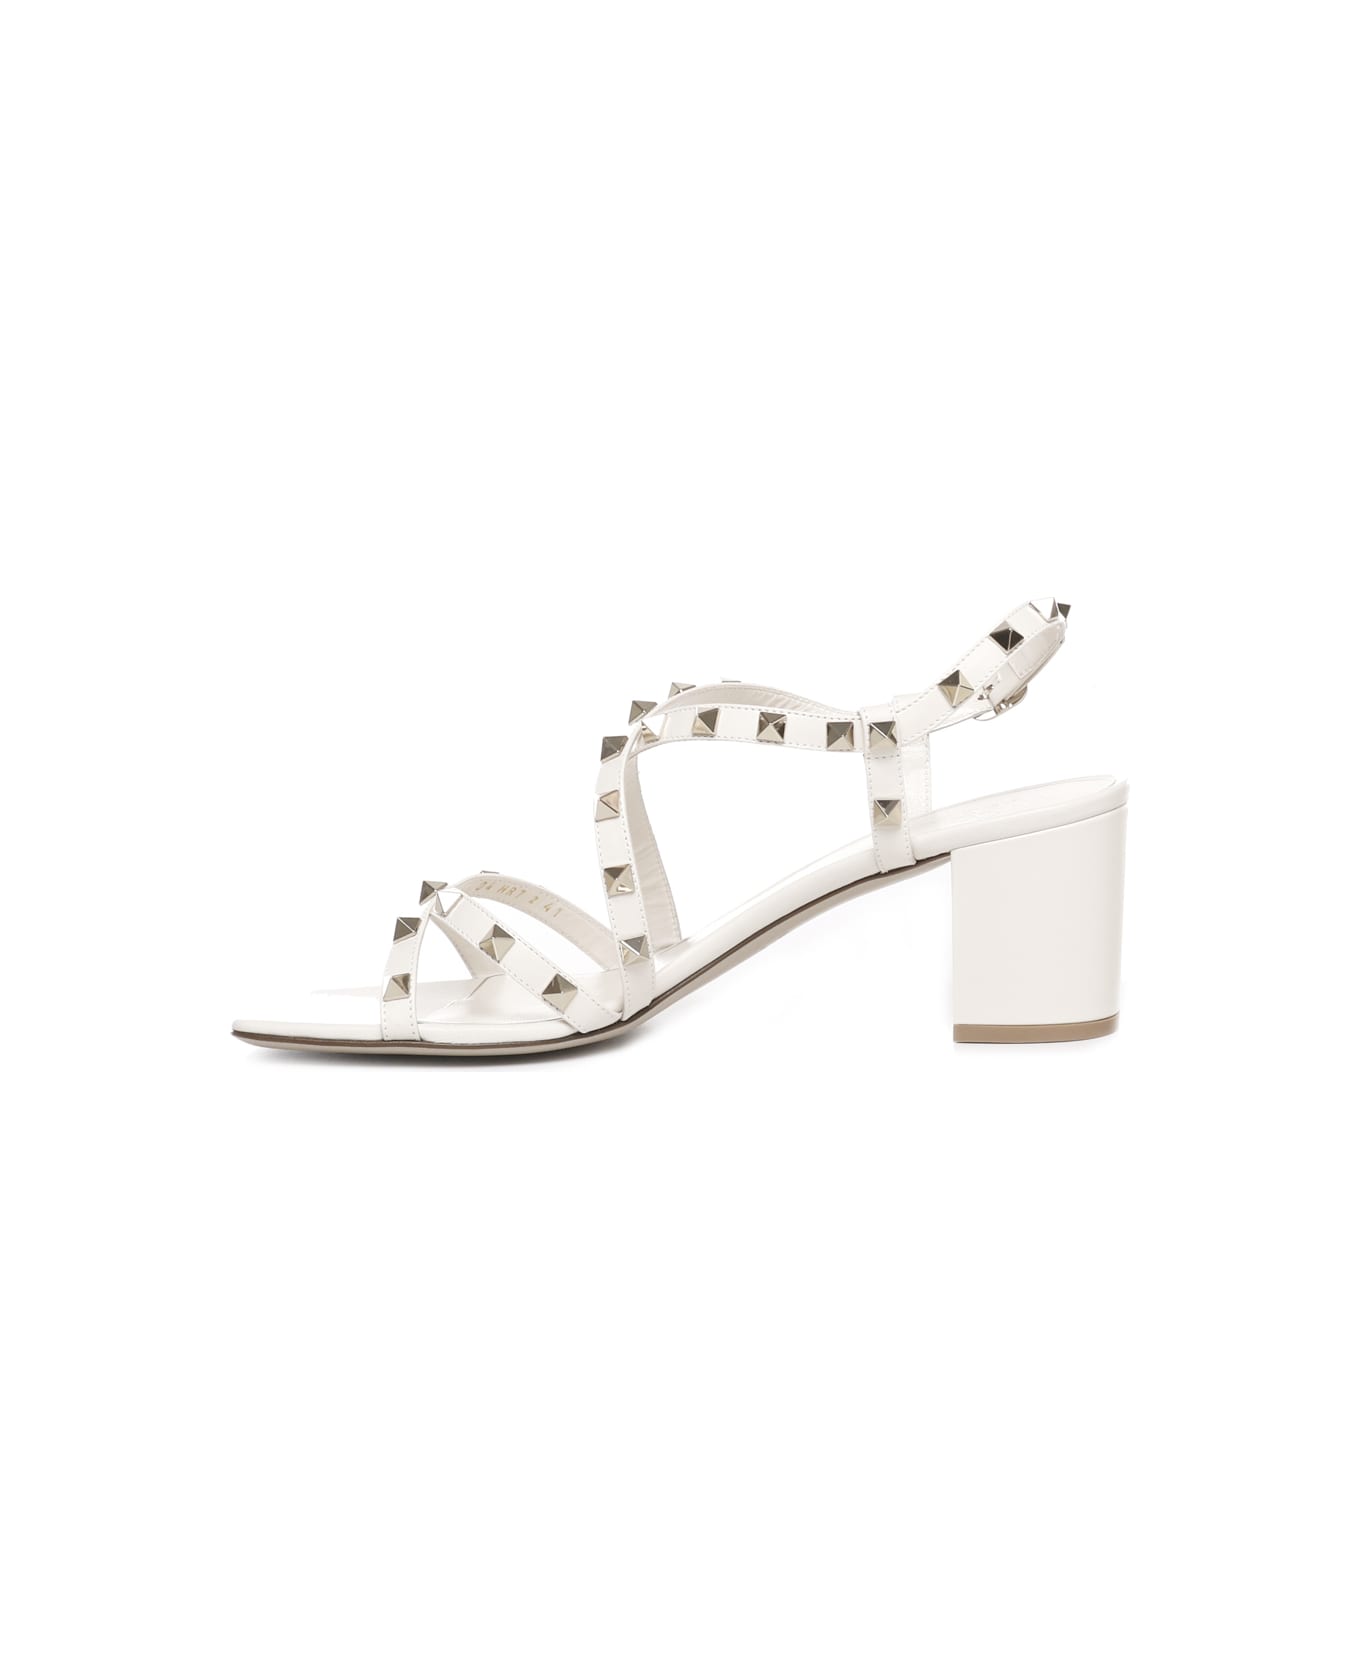 Valentino Garavani Rockstud Sandals With Calfskin Strap - White